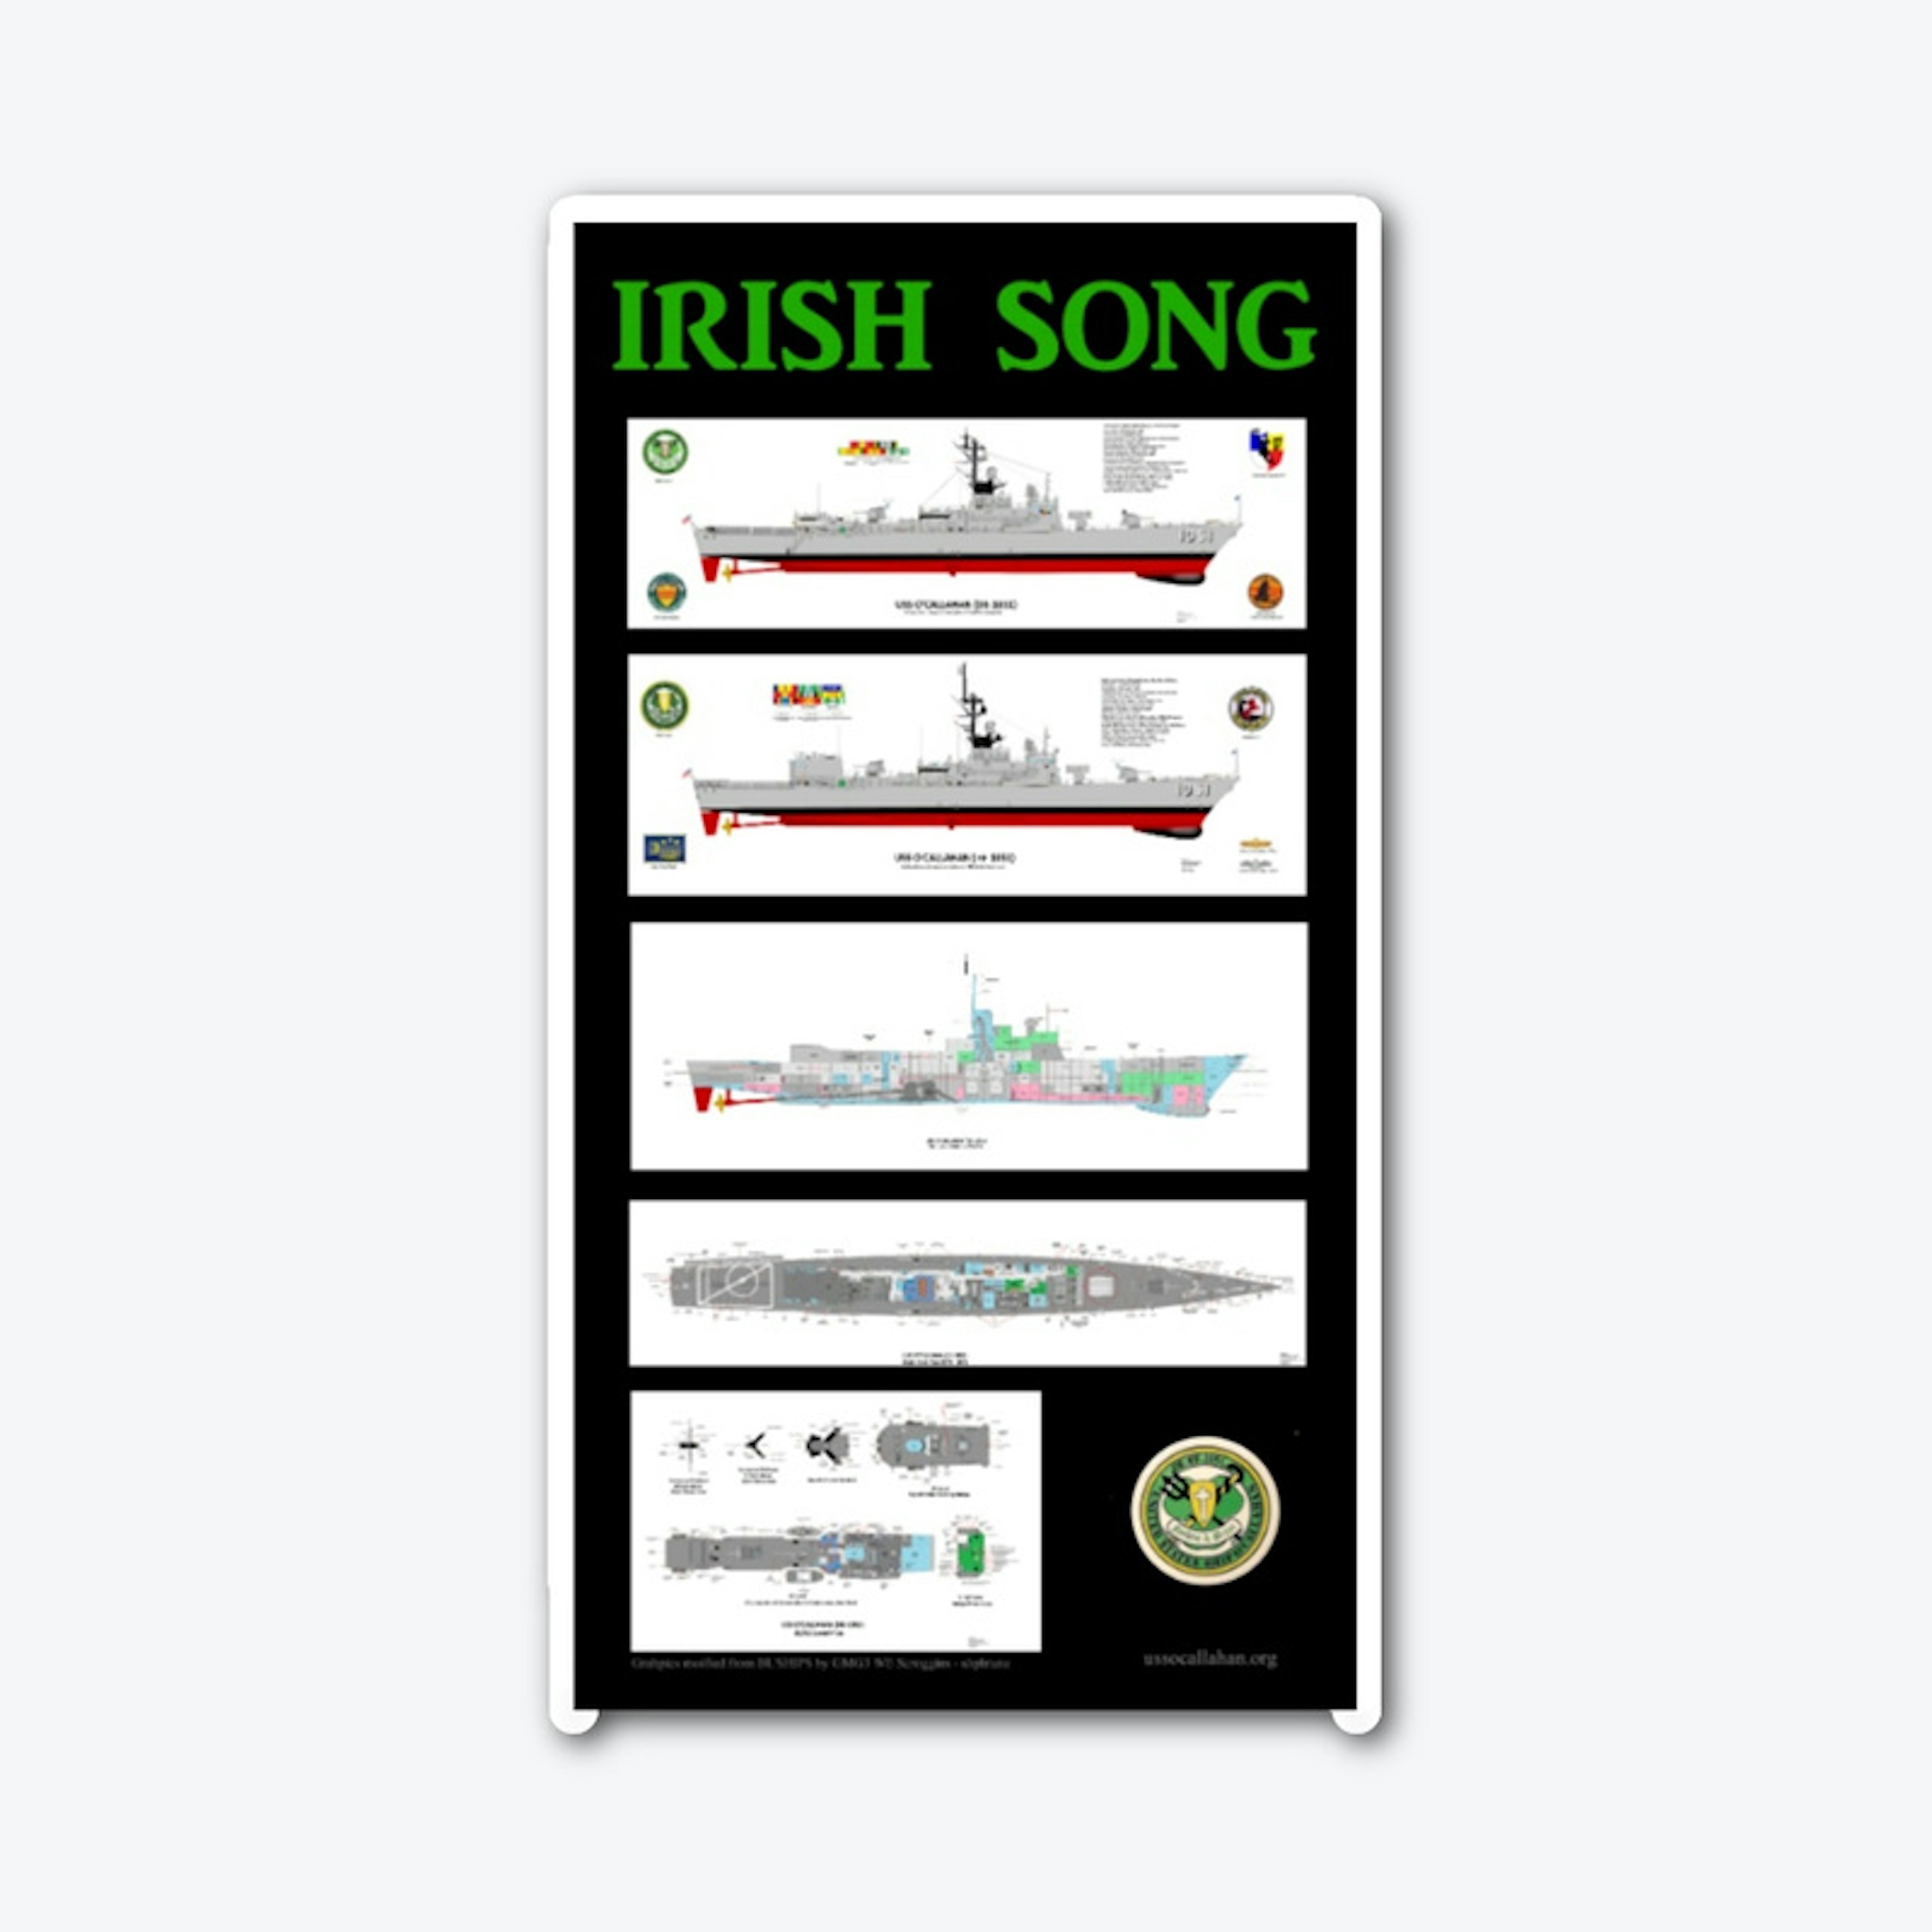 IRISH SONG - 5 ways